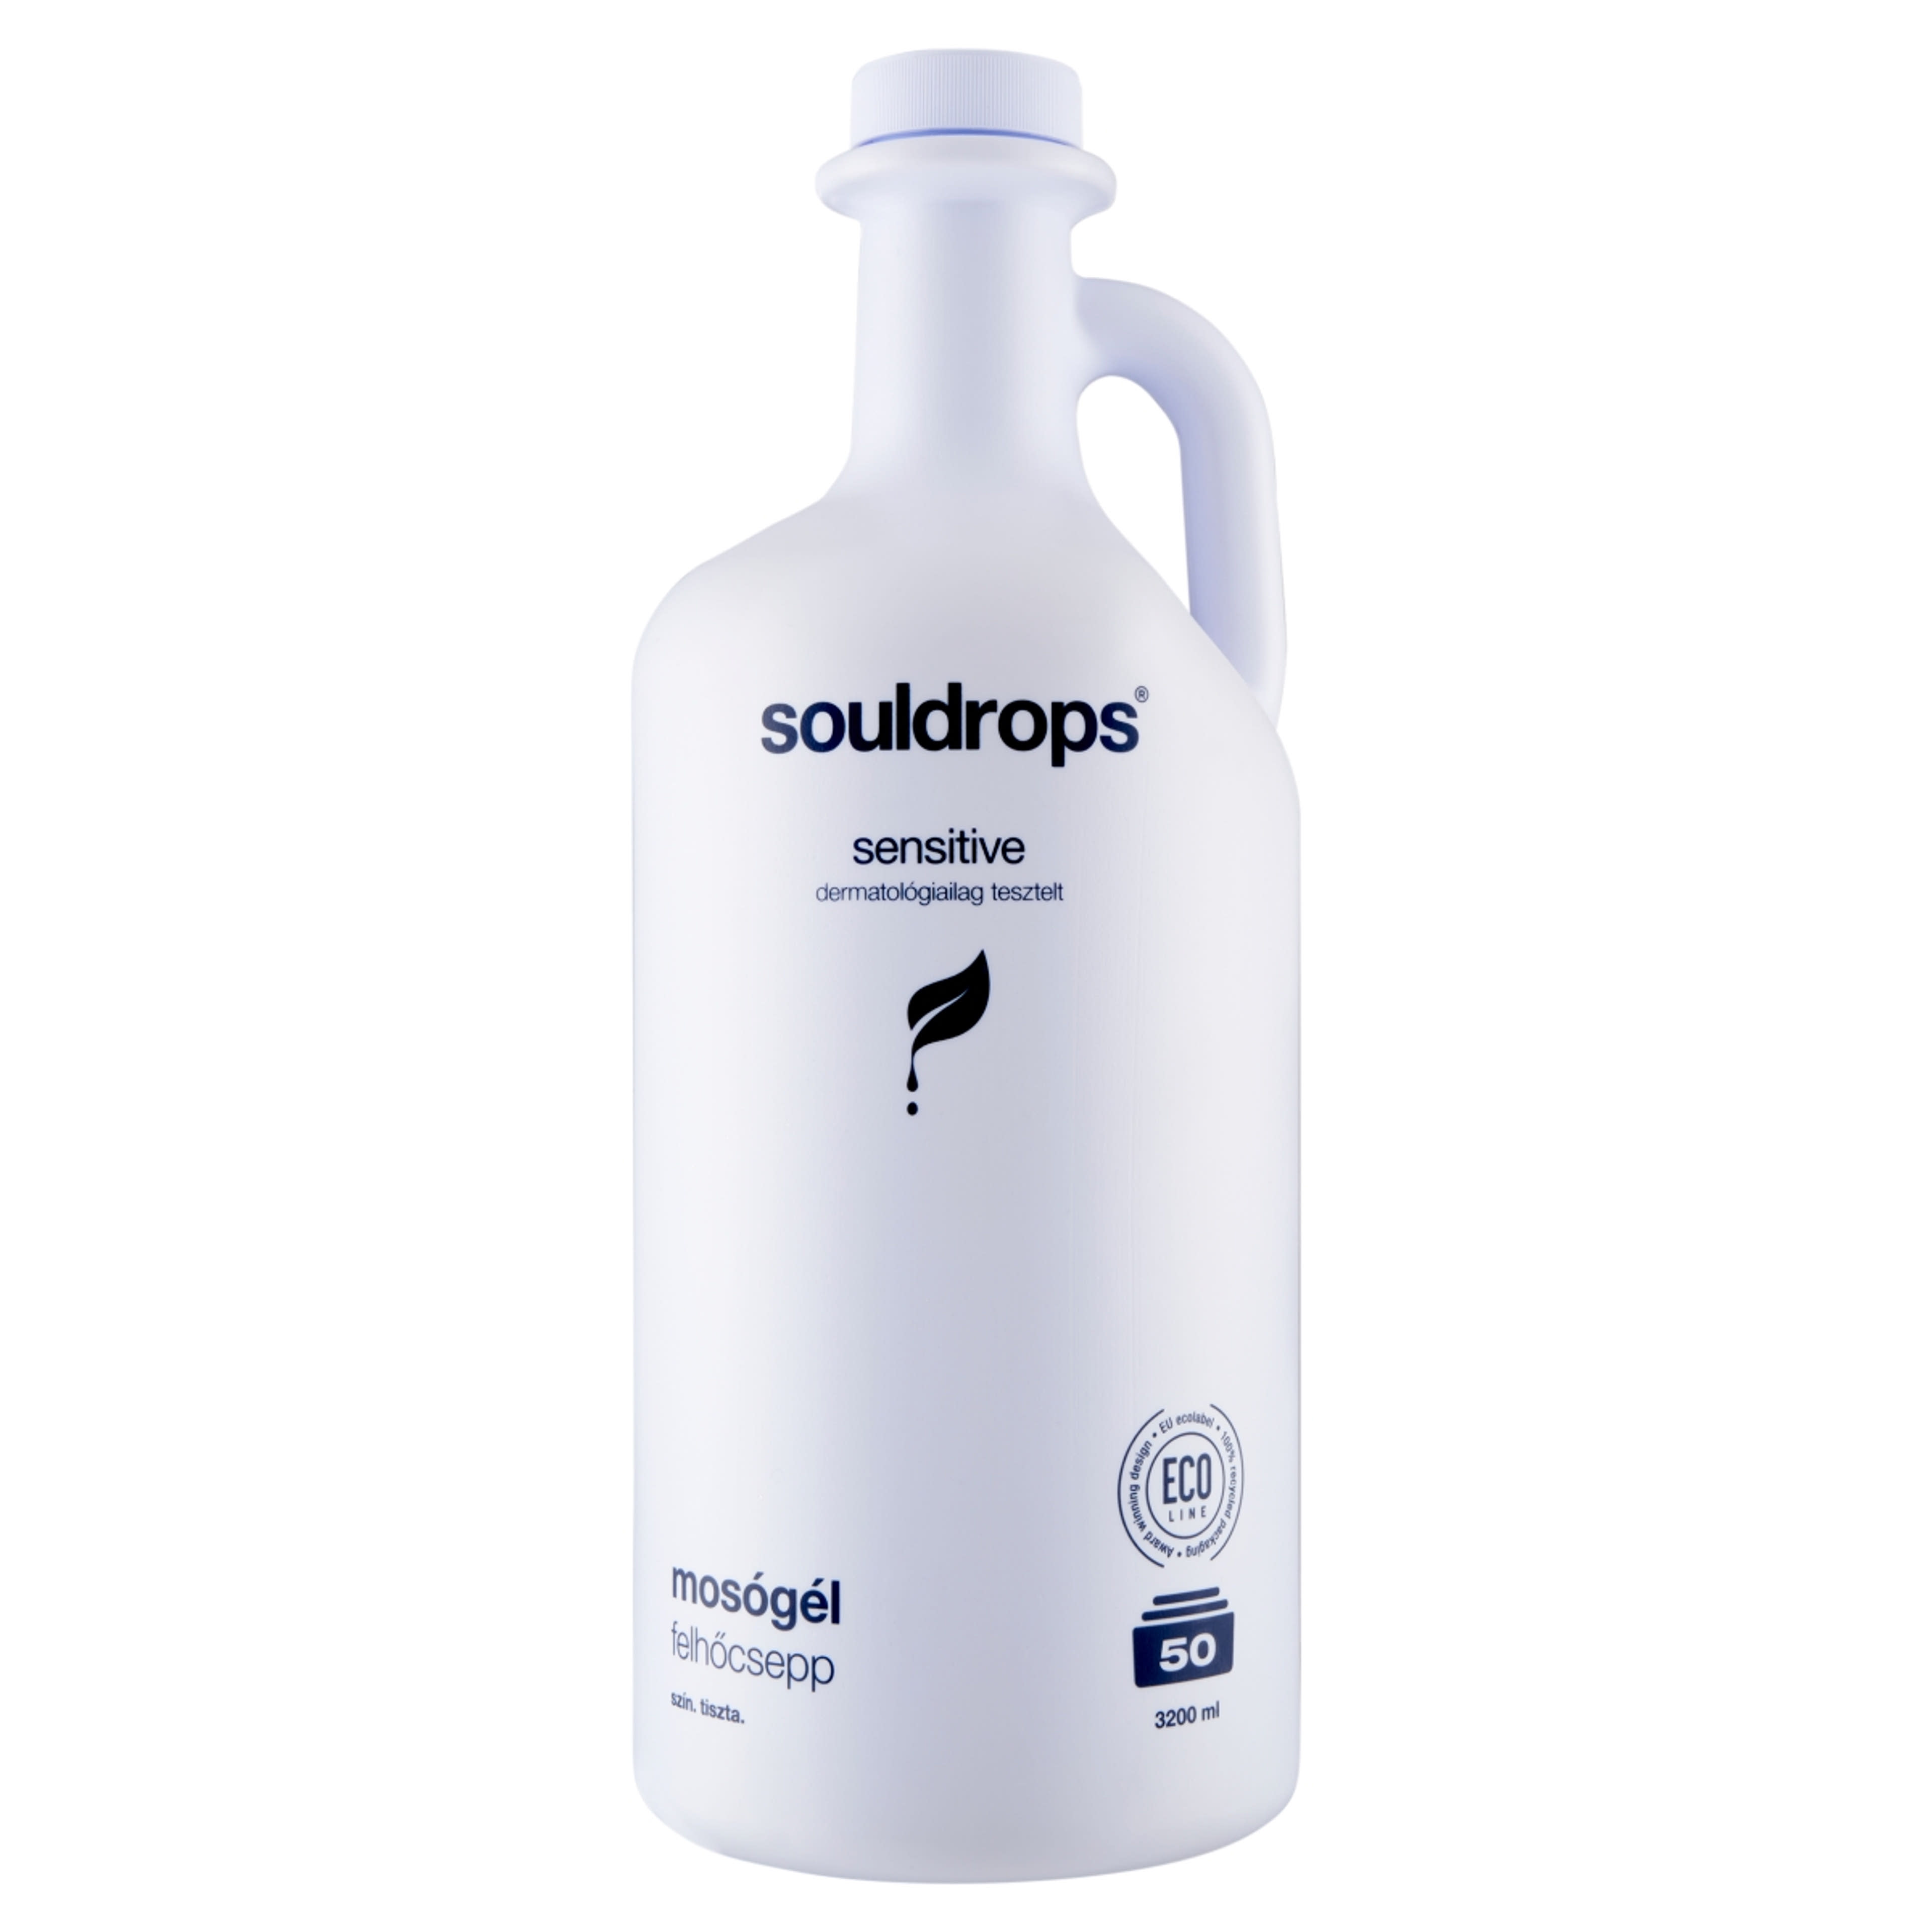 Souldrops Felhőcsepp szenzitív mosógél 50 mosás - 3200 ml